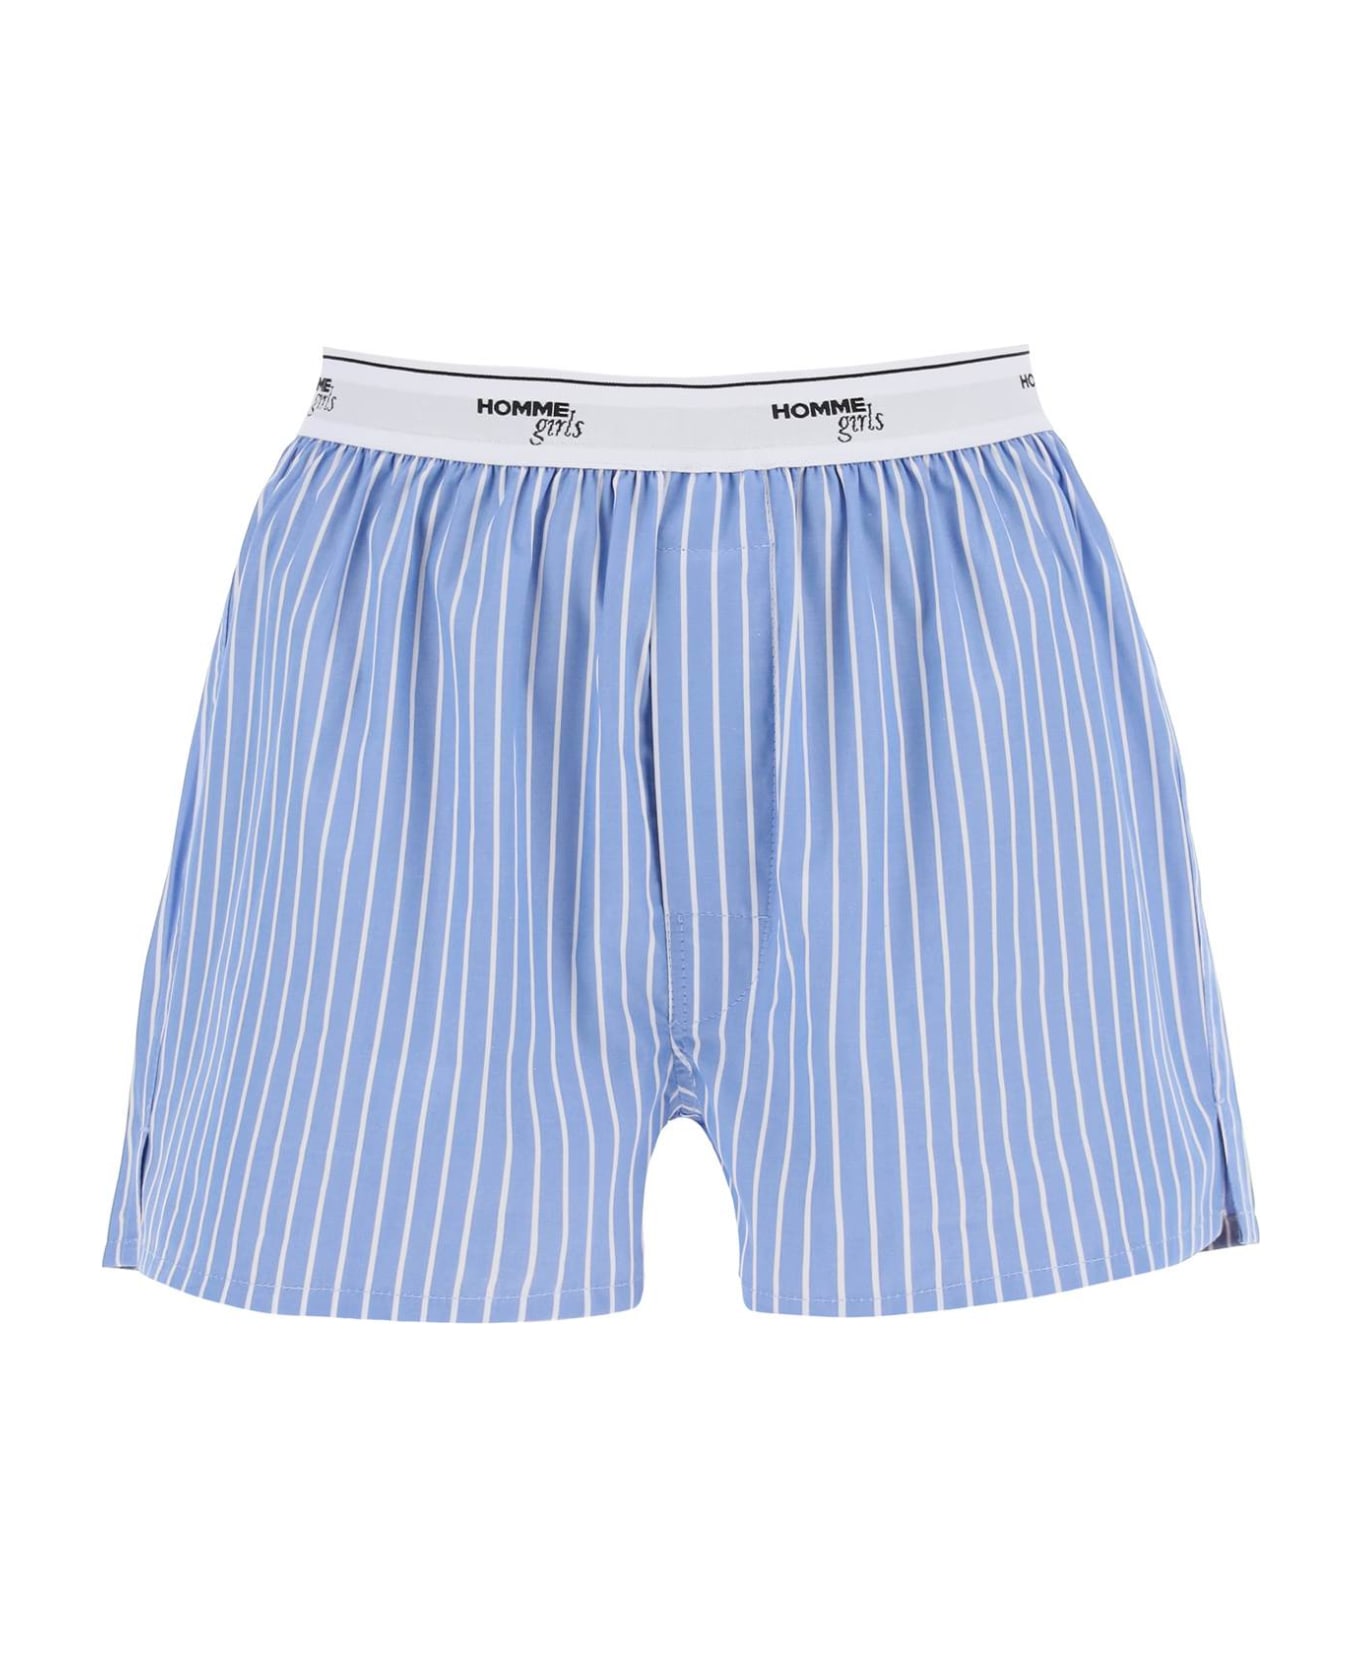 HommeGirls Cotton Boxer Shorts - BLUE WHITE (Blue)